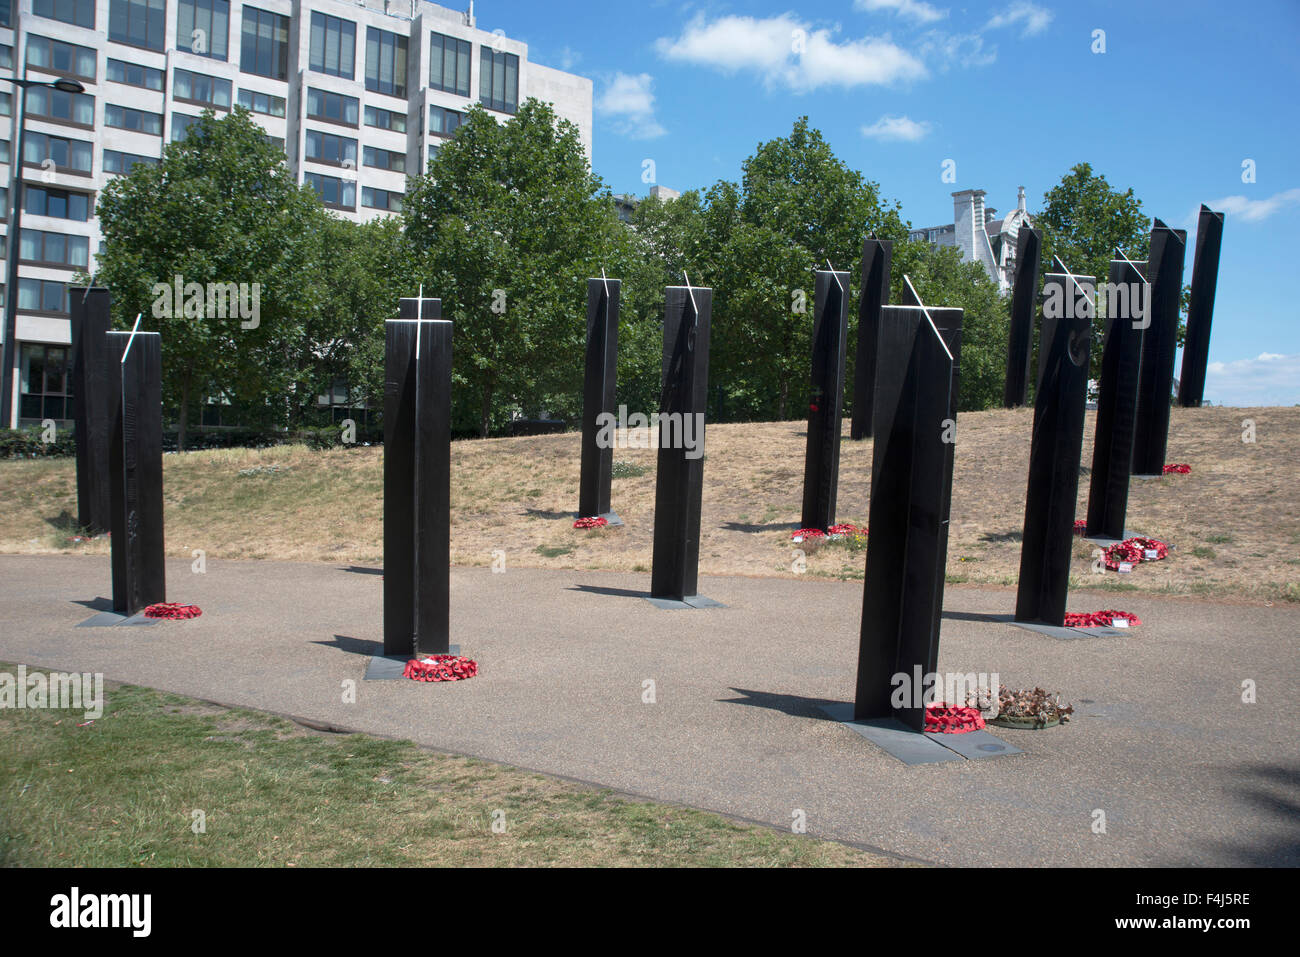 La Nouvelle Zélande War Memorial, Hyde Park Corner, London, Angleterre, Royaume-Uni, Europe Banque D'Images